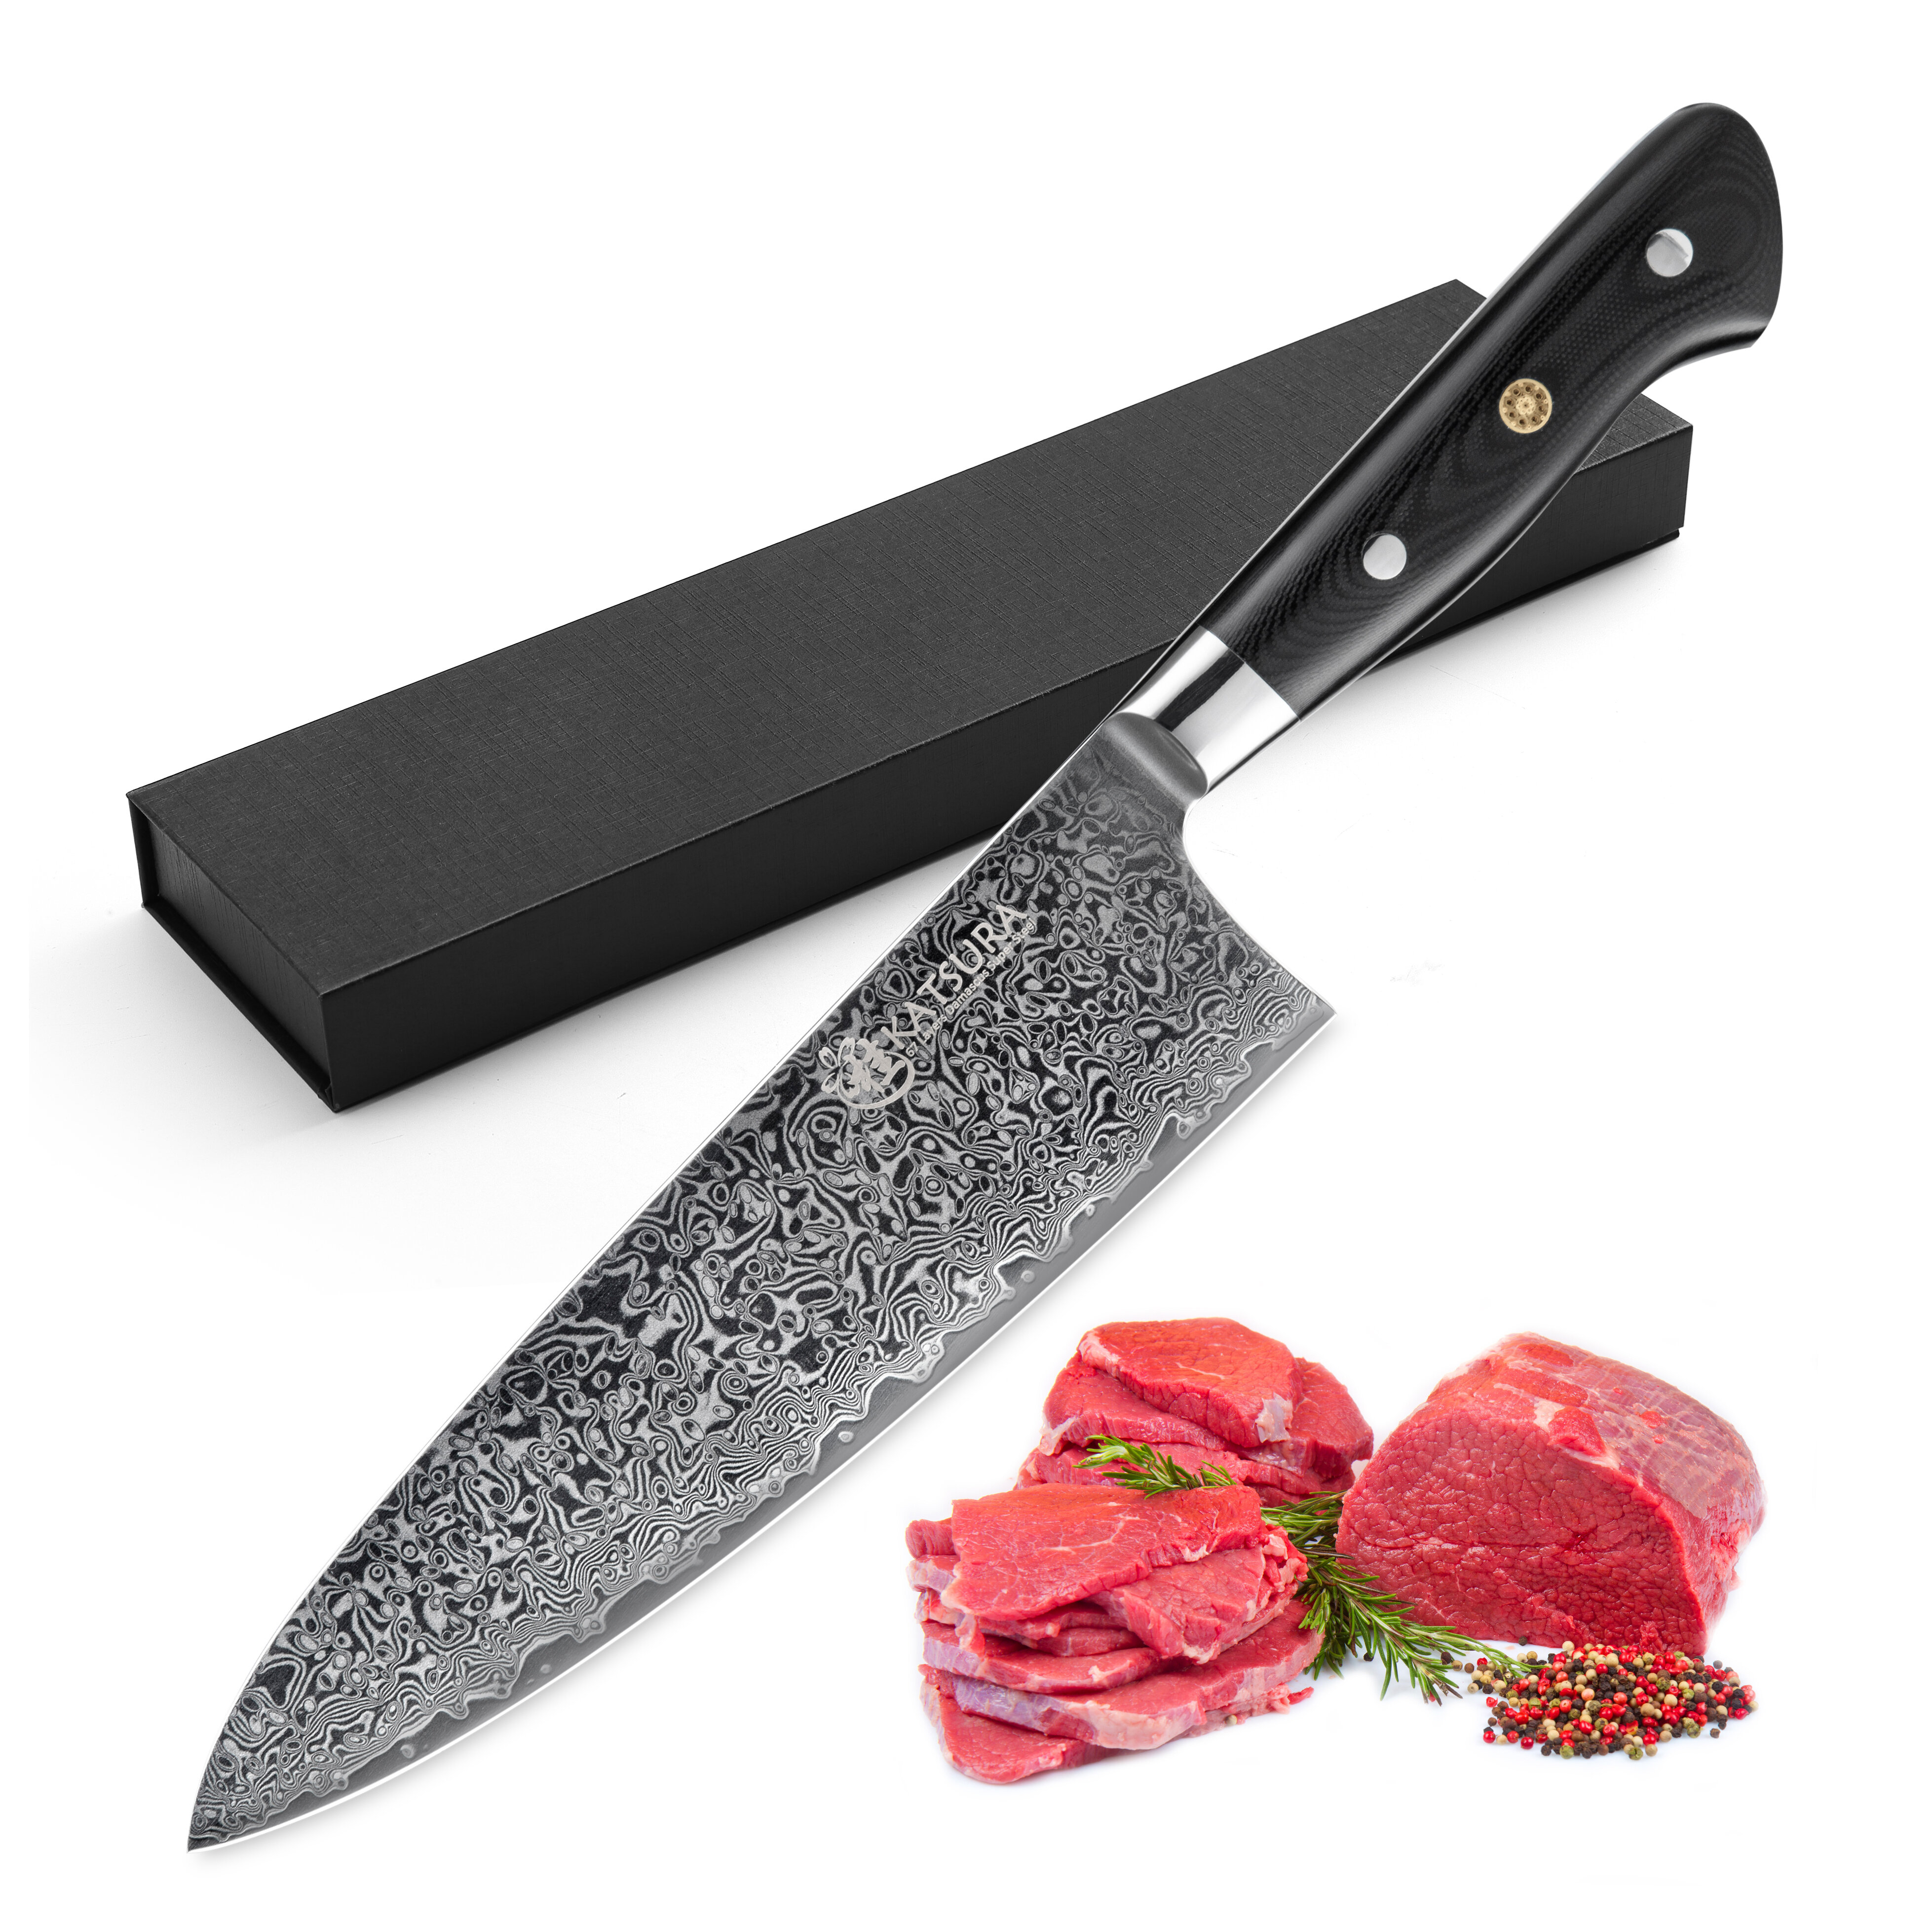 https://assets.wfcdn.com/im/04960147/compr-r85/1912/191258719/katsura-cutlery-8-chefs-knife.jpg